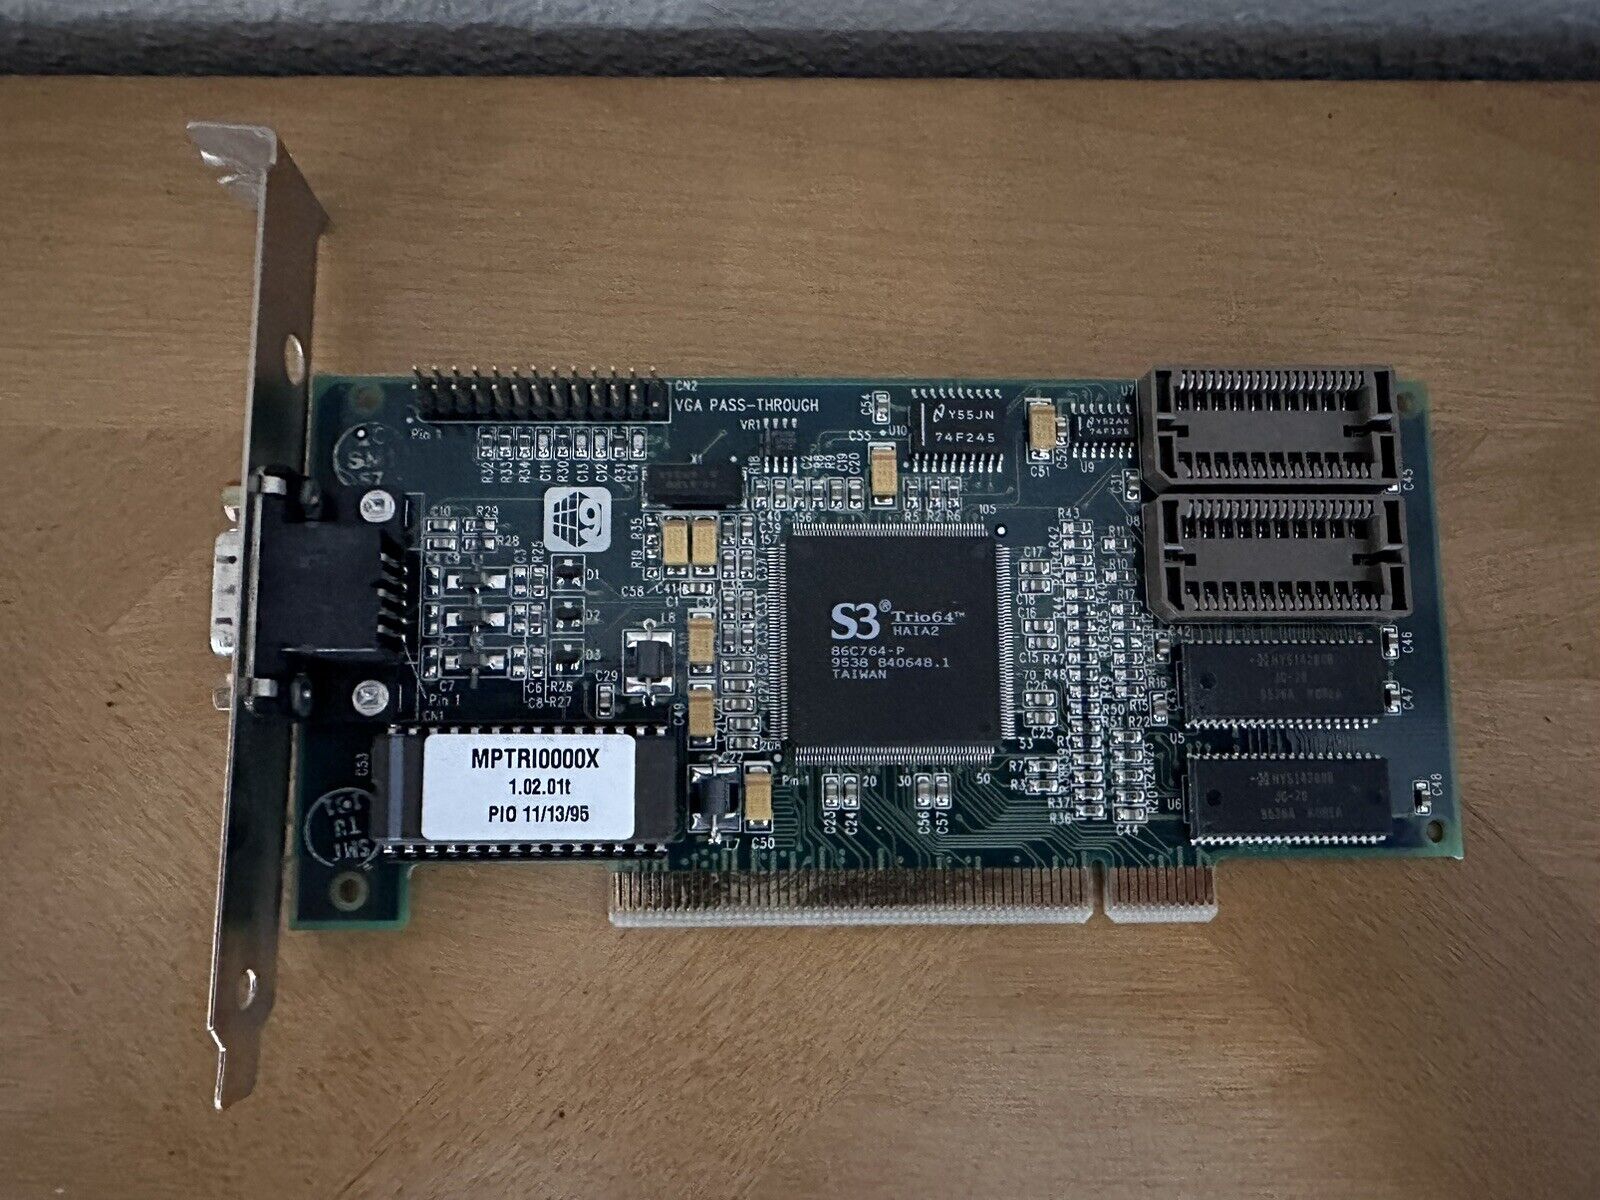 S3 TRIO 64 PCI Pc Graphics